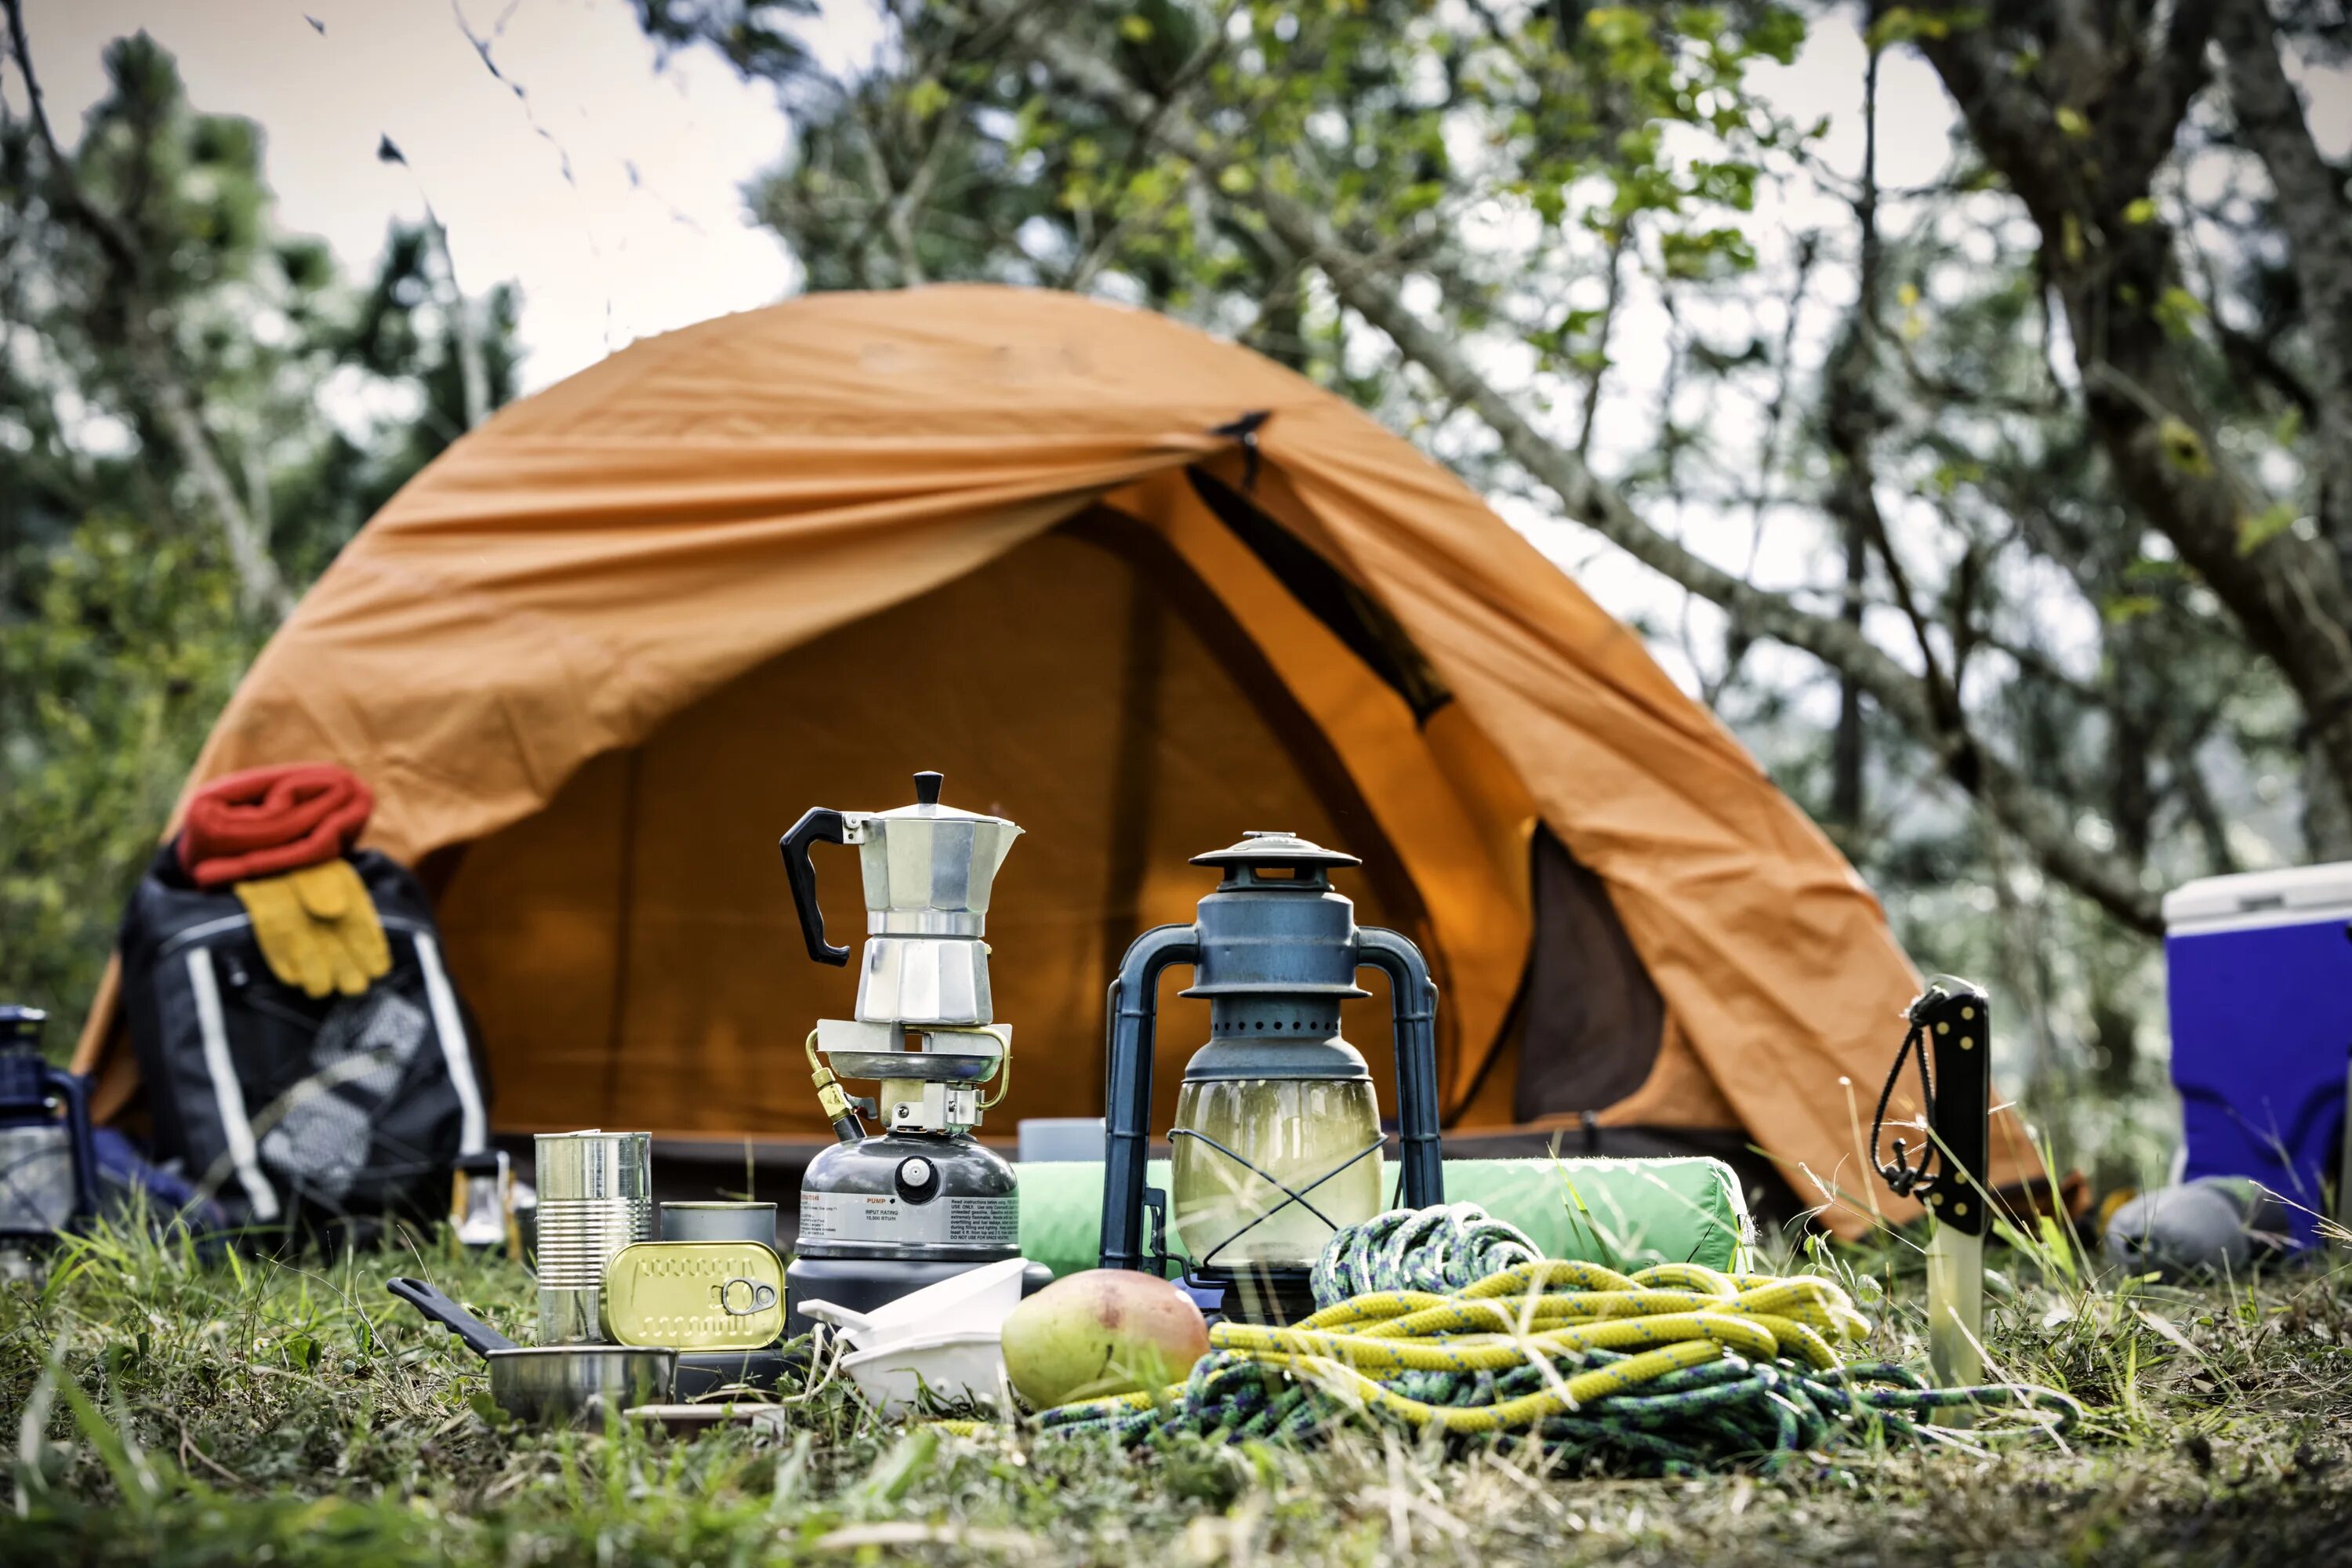 Find a camp. Туристическая палатка на природе. Походный туризм. Поход с палатками. Туризм с палатками.